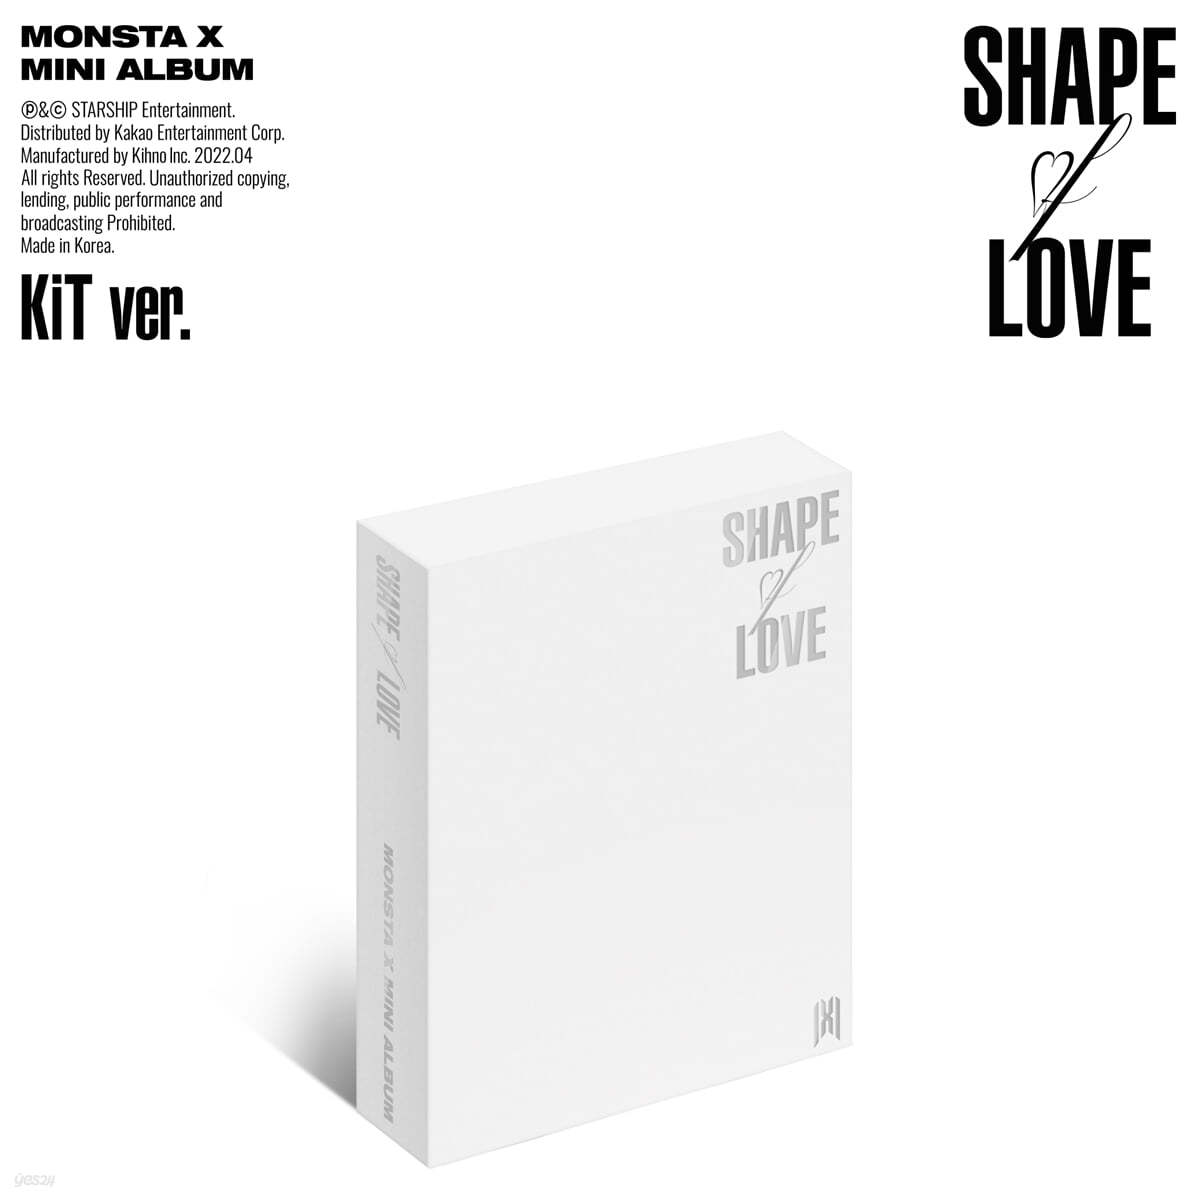 몬스타엑스 (MONSTA X) - 미니앨범 11집 : SHAPE of LOVE [키트앨범]